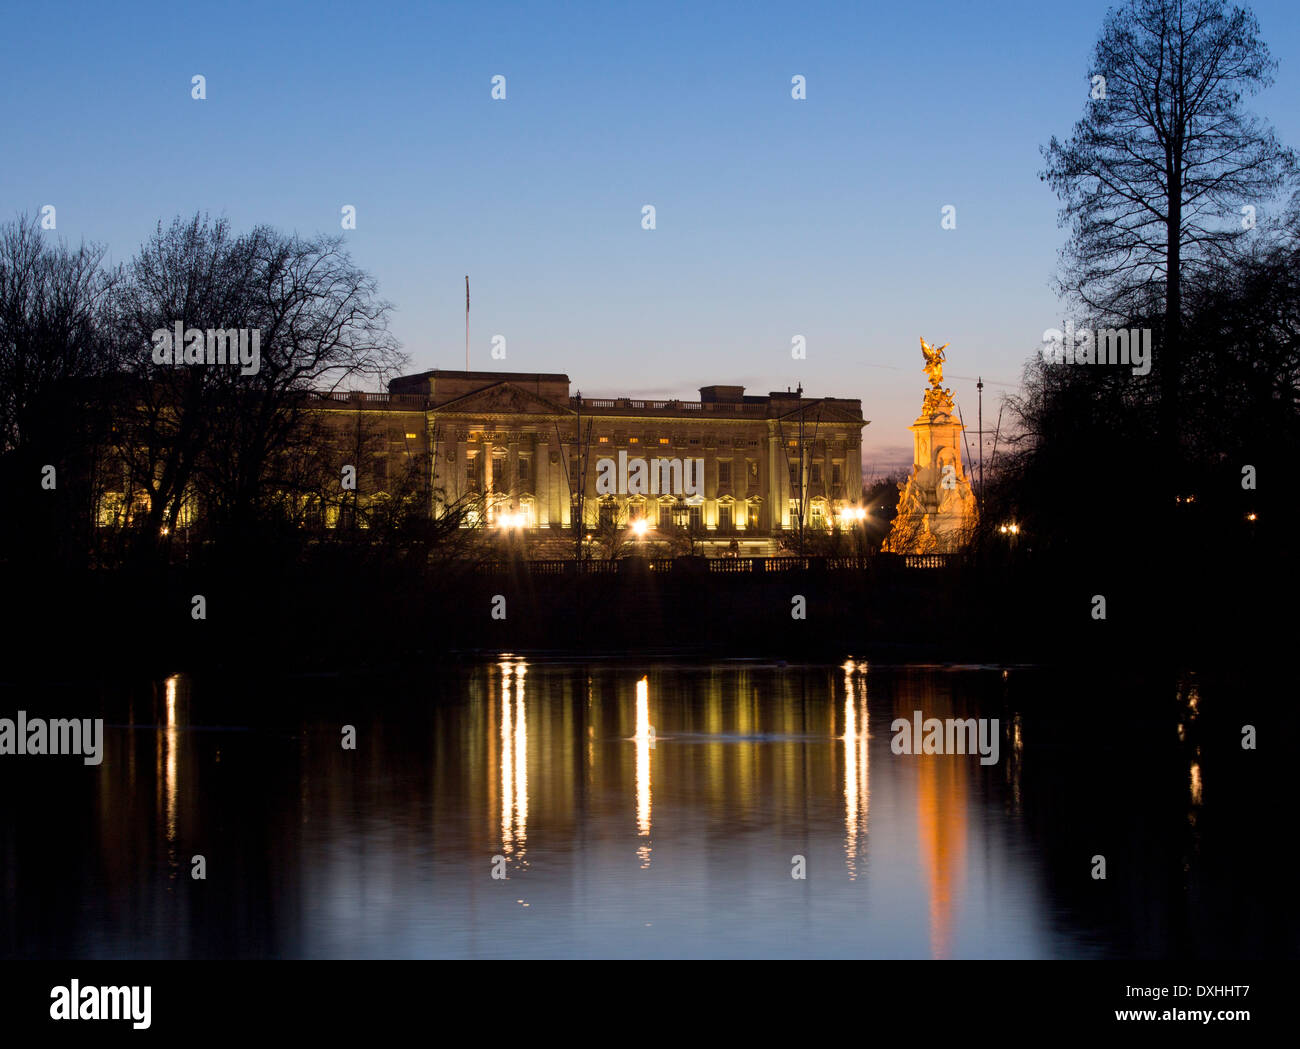 El Palacio de Buckingham y el Victoria Memorial se refleja en el lago en St James's Park en la noche Londres England Reino Unido Foto de stock